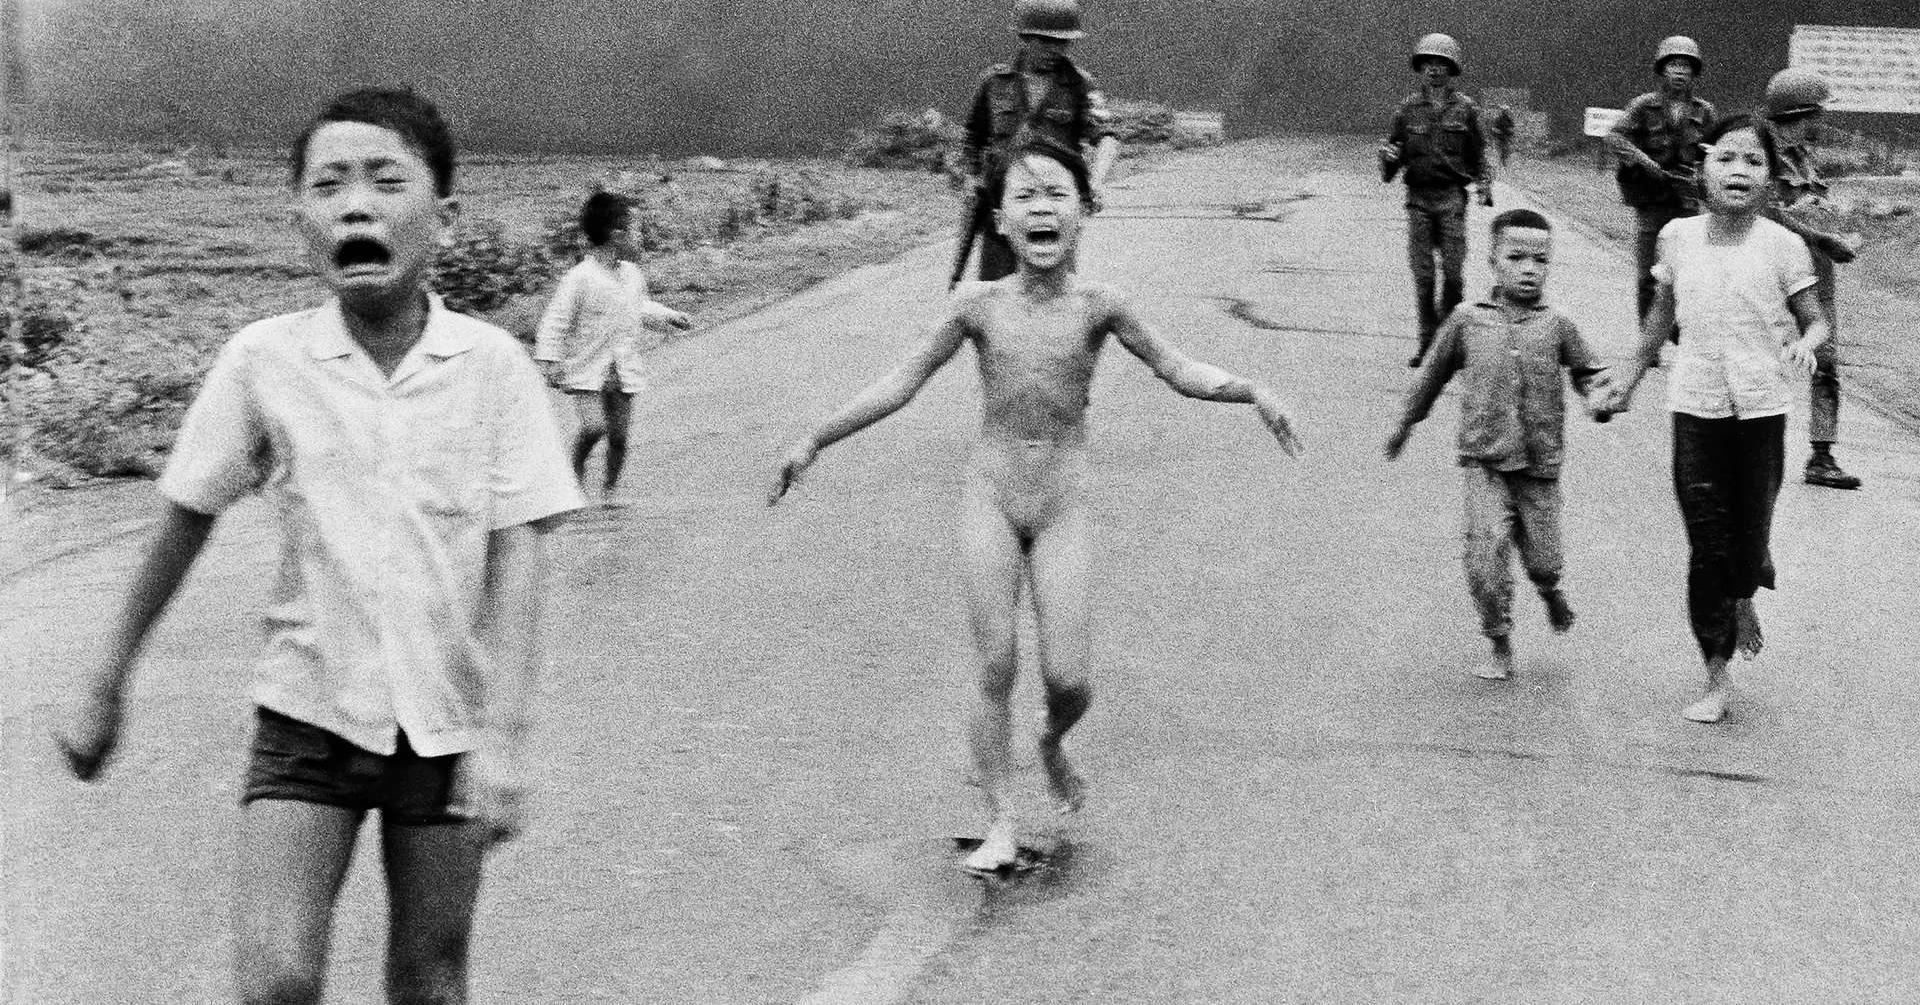 Dett var dette historiske pressebildet, som viser ni år gamle Phan Thi Kim Phuc og andre forbrente vietnamesiske barn etter et napalmangrep under Vietnamkrigen i 1972, som fikk Tom Egeland utestengt fra Facebook i ett døgn.